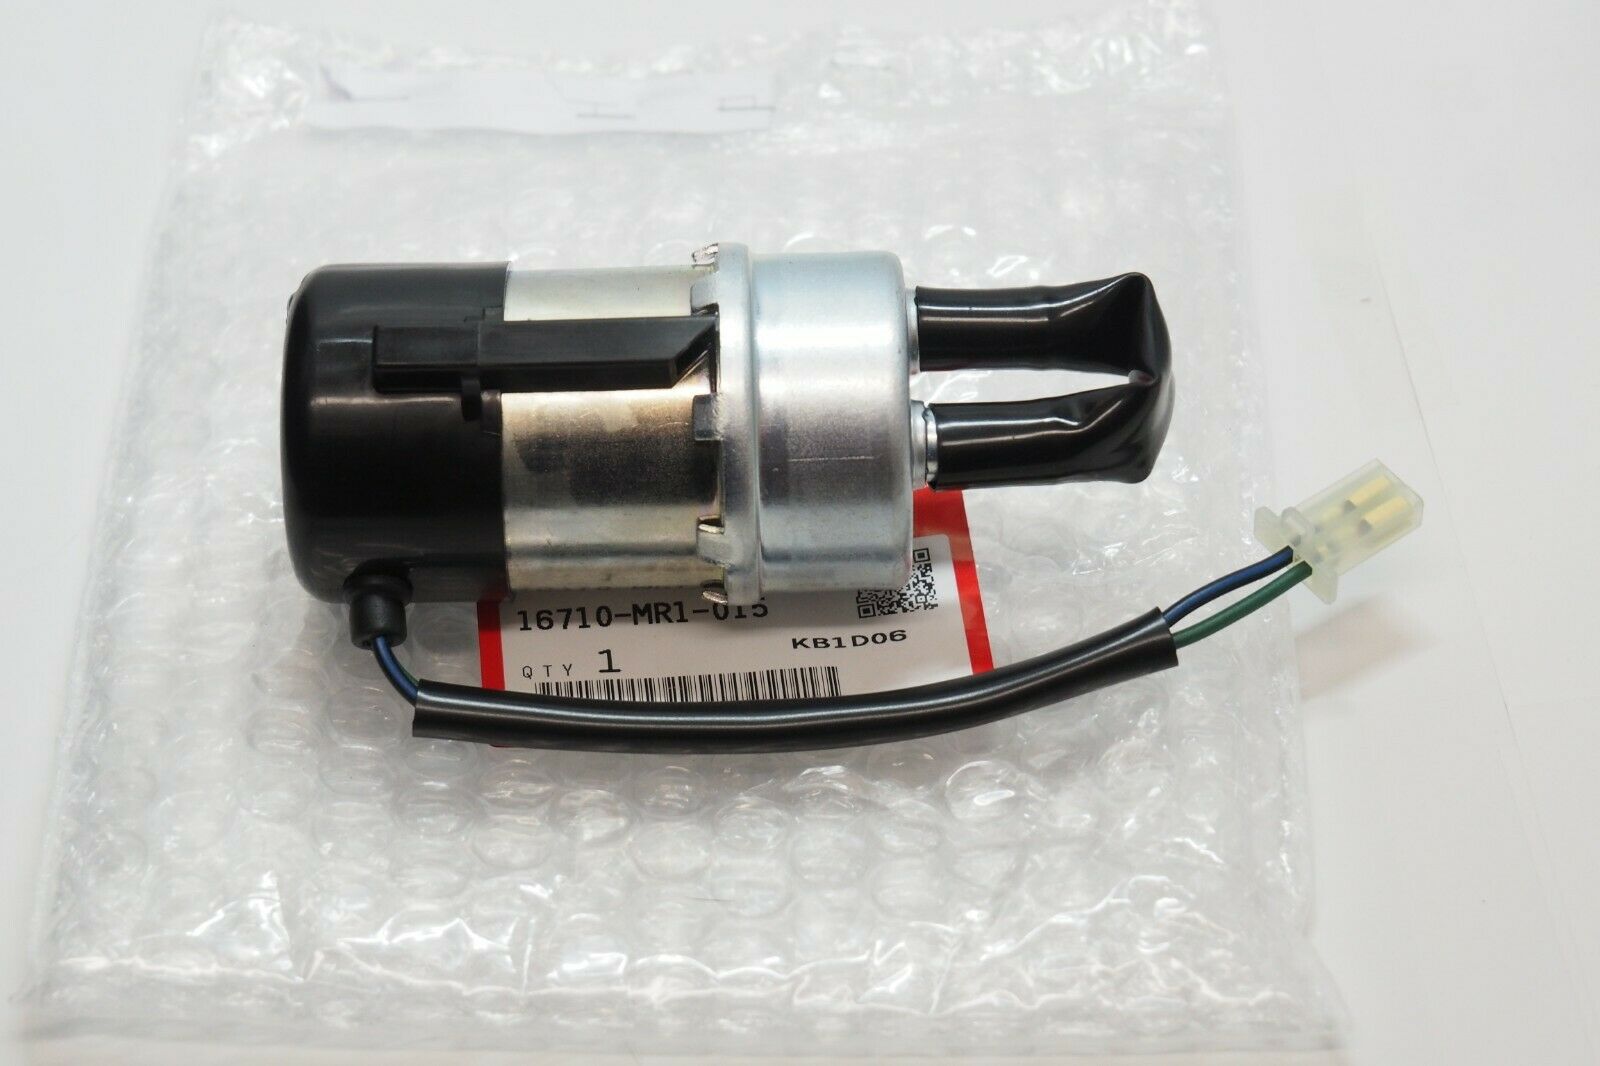 HONDA Genuine Parts Fuel Pump SHADOW VLX 1988-1998 16710-MR1-015 ★